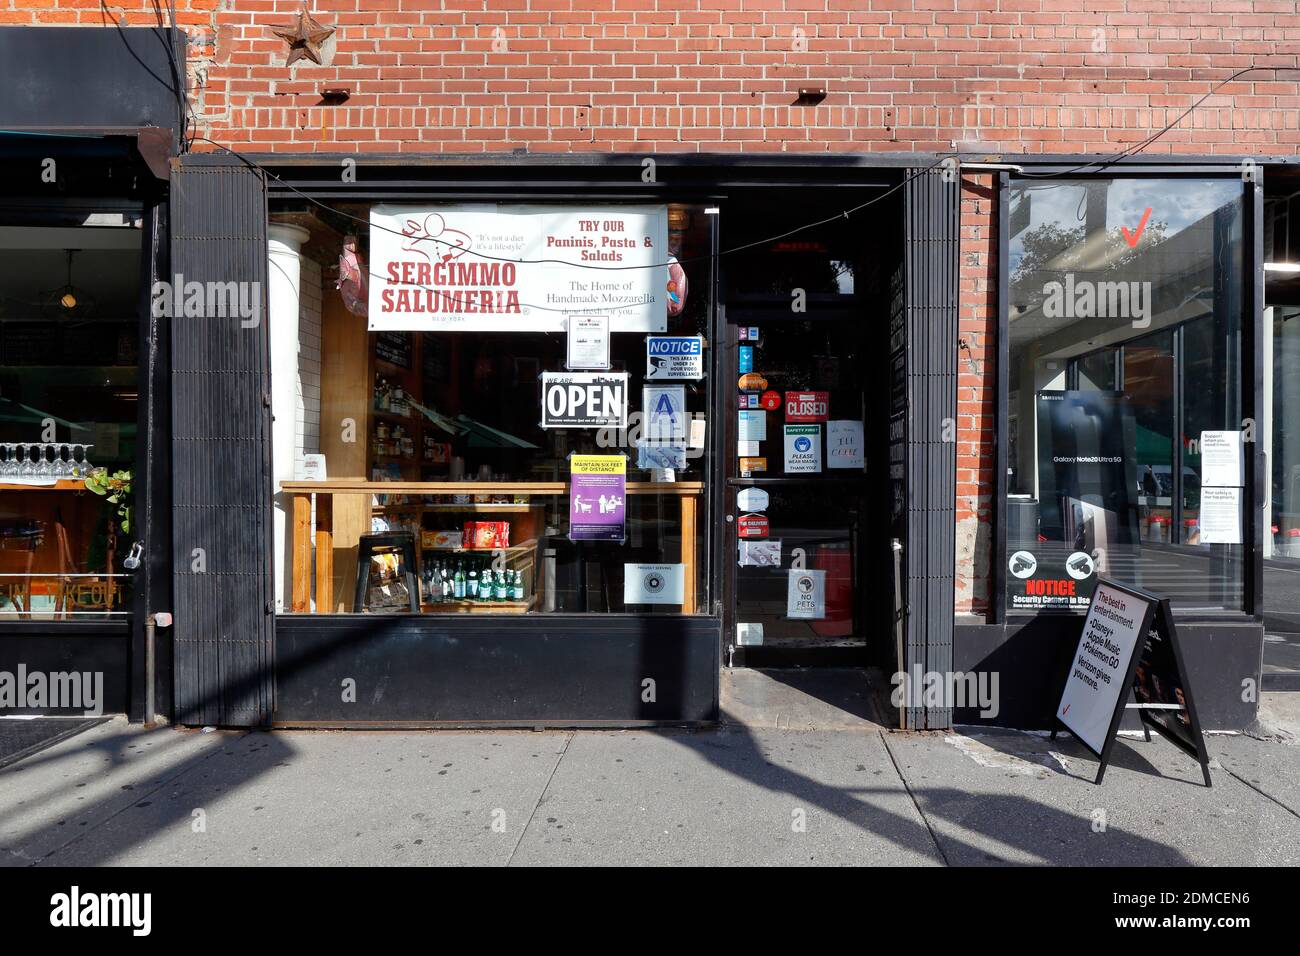 Sergemmo Salumeria, 462 6. Ave, New York, NYC Foto von einem italienischen Lebensmittelgeschäft, Sandwich-Shop in Greenwich Village Manhattan. Stockfoto